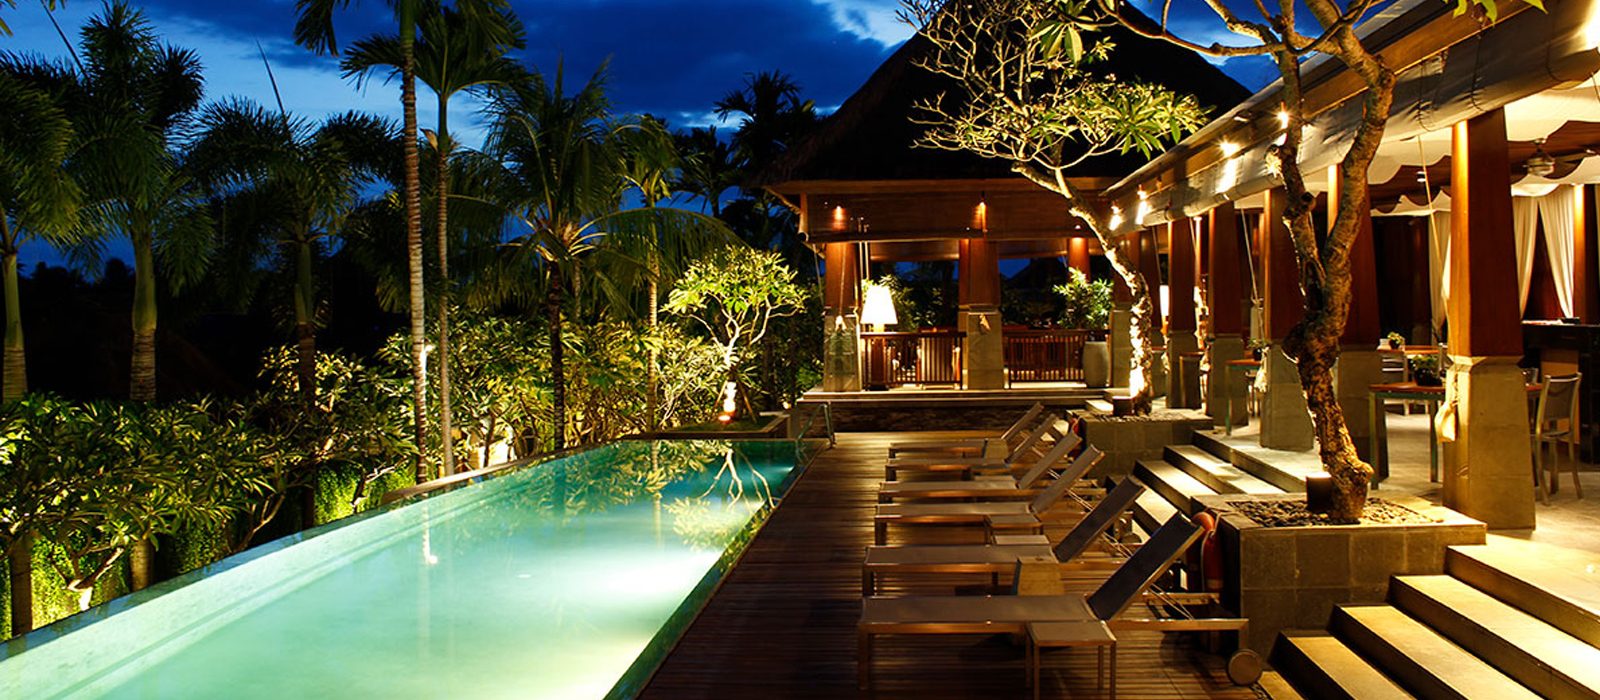 Luxury Bali Holiday Packages The Kayana Villas Seminyak Header